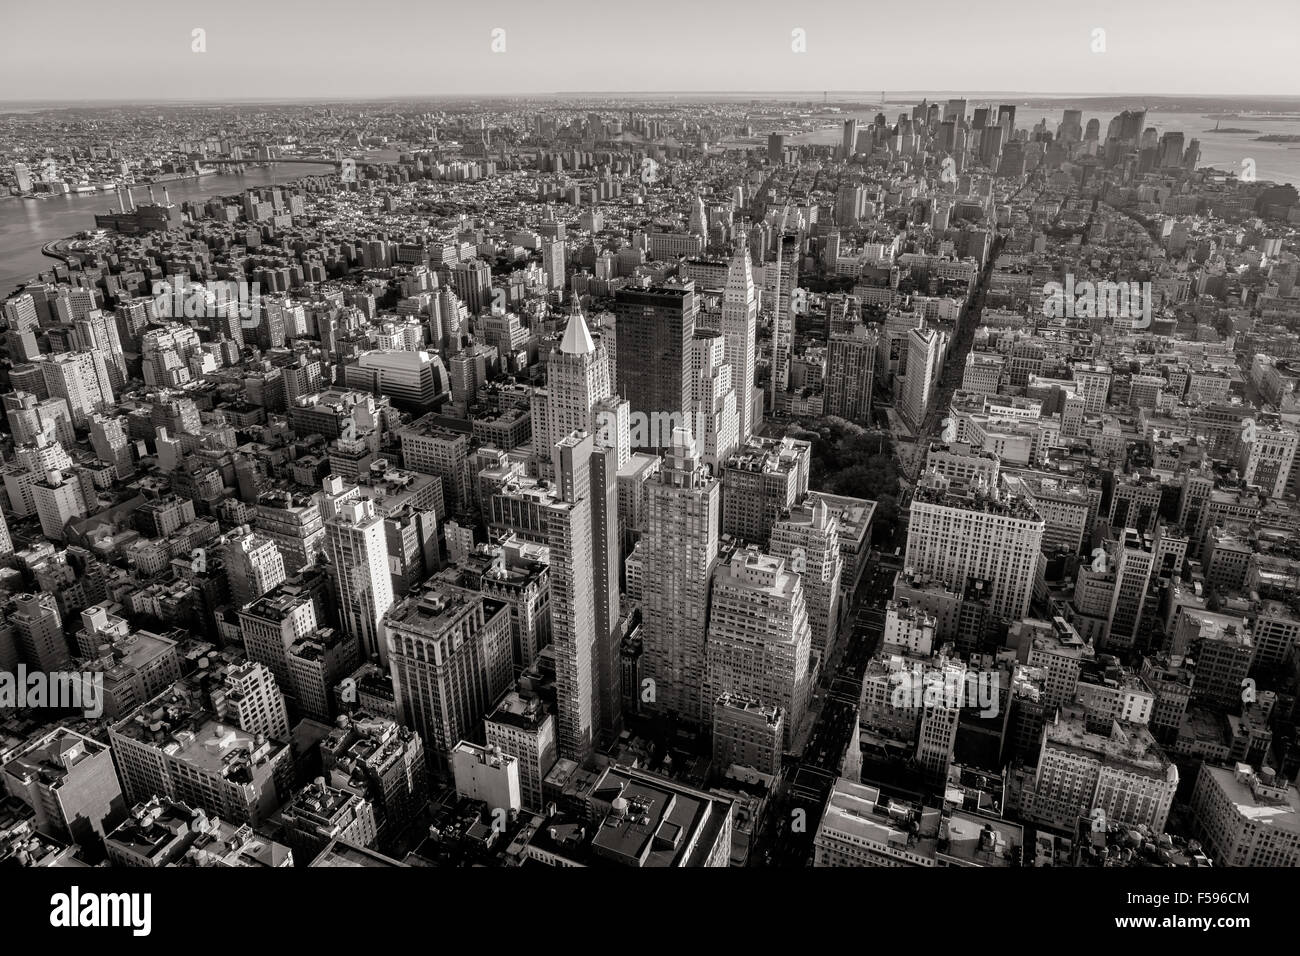 Le noir et blanc vue aérienne de New York avec les gratte-ciel de Midtown, Chelsea, East Village et le Lower Manhattan. NYC Banque D'Images